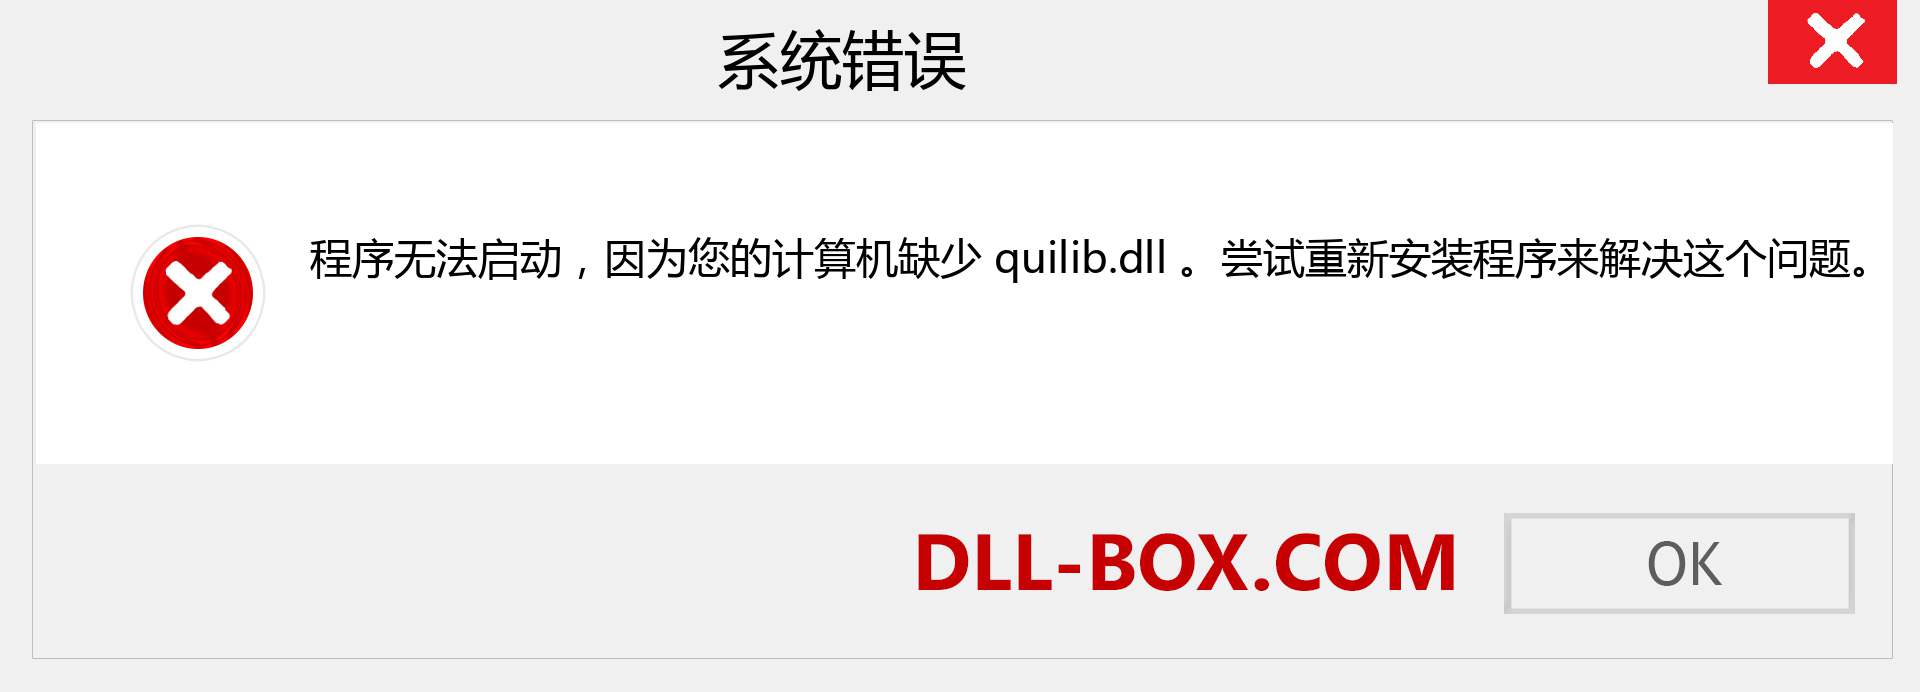 quilib.dll 文件丢失？。 适用于 Windows 7、8、10 的下载 - 修复 Windows、照片、图像上的 quilib dll 丢失错误